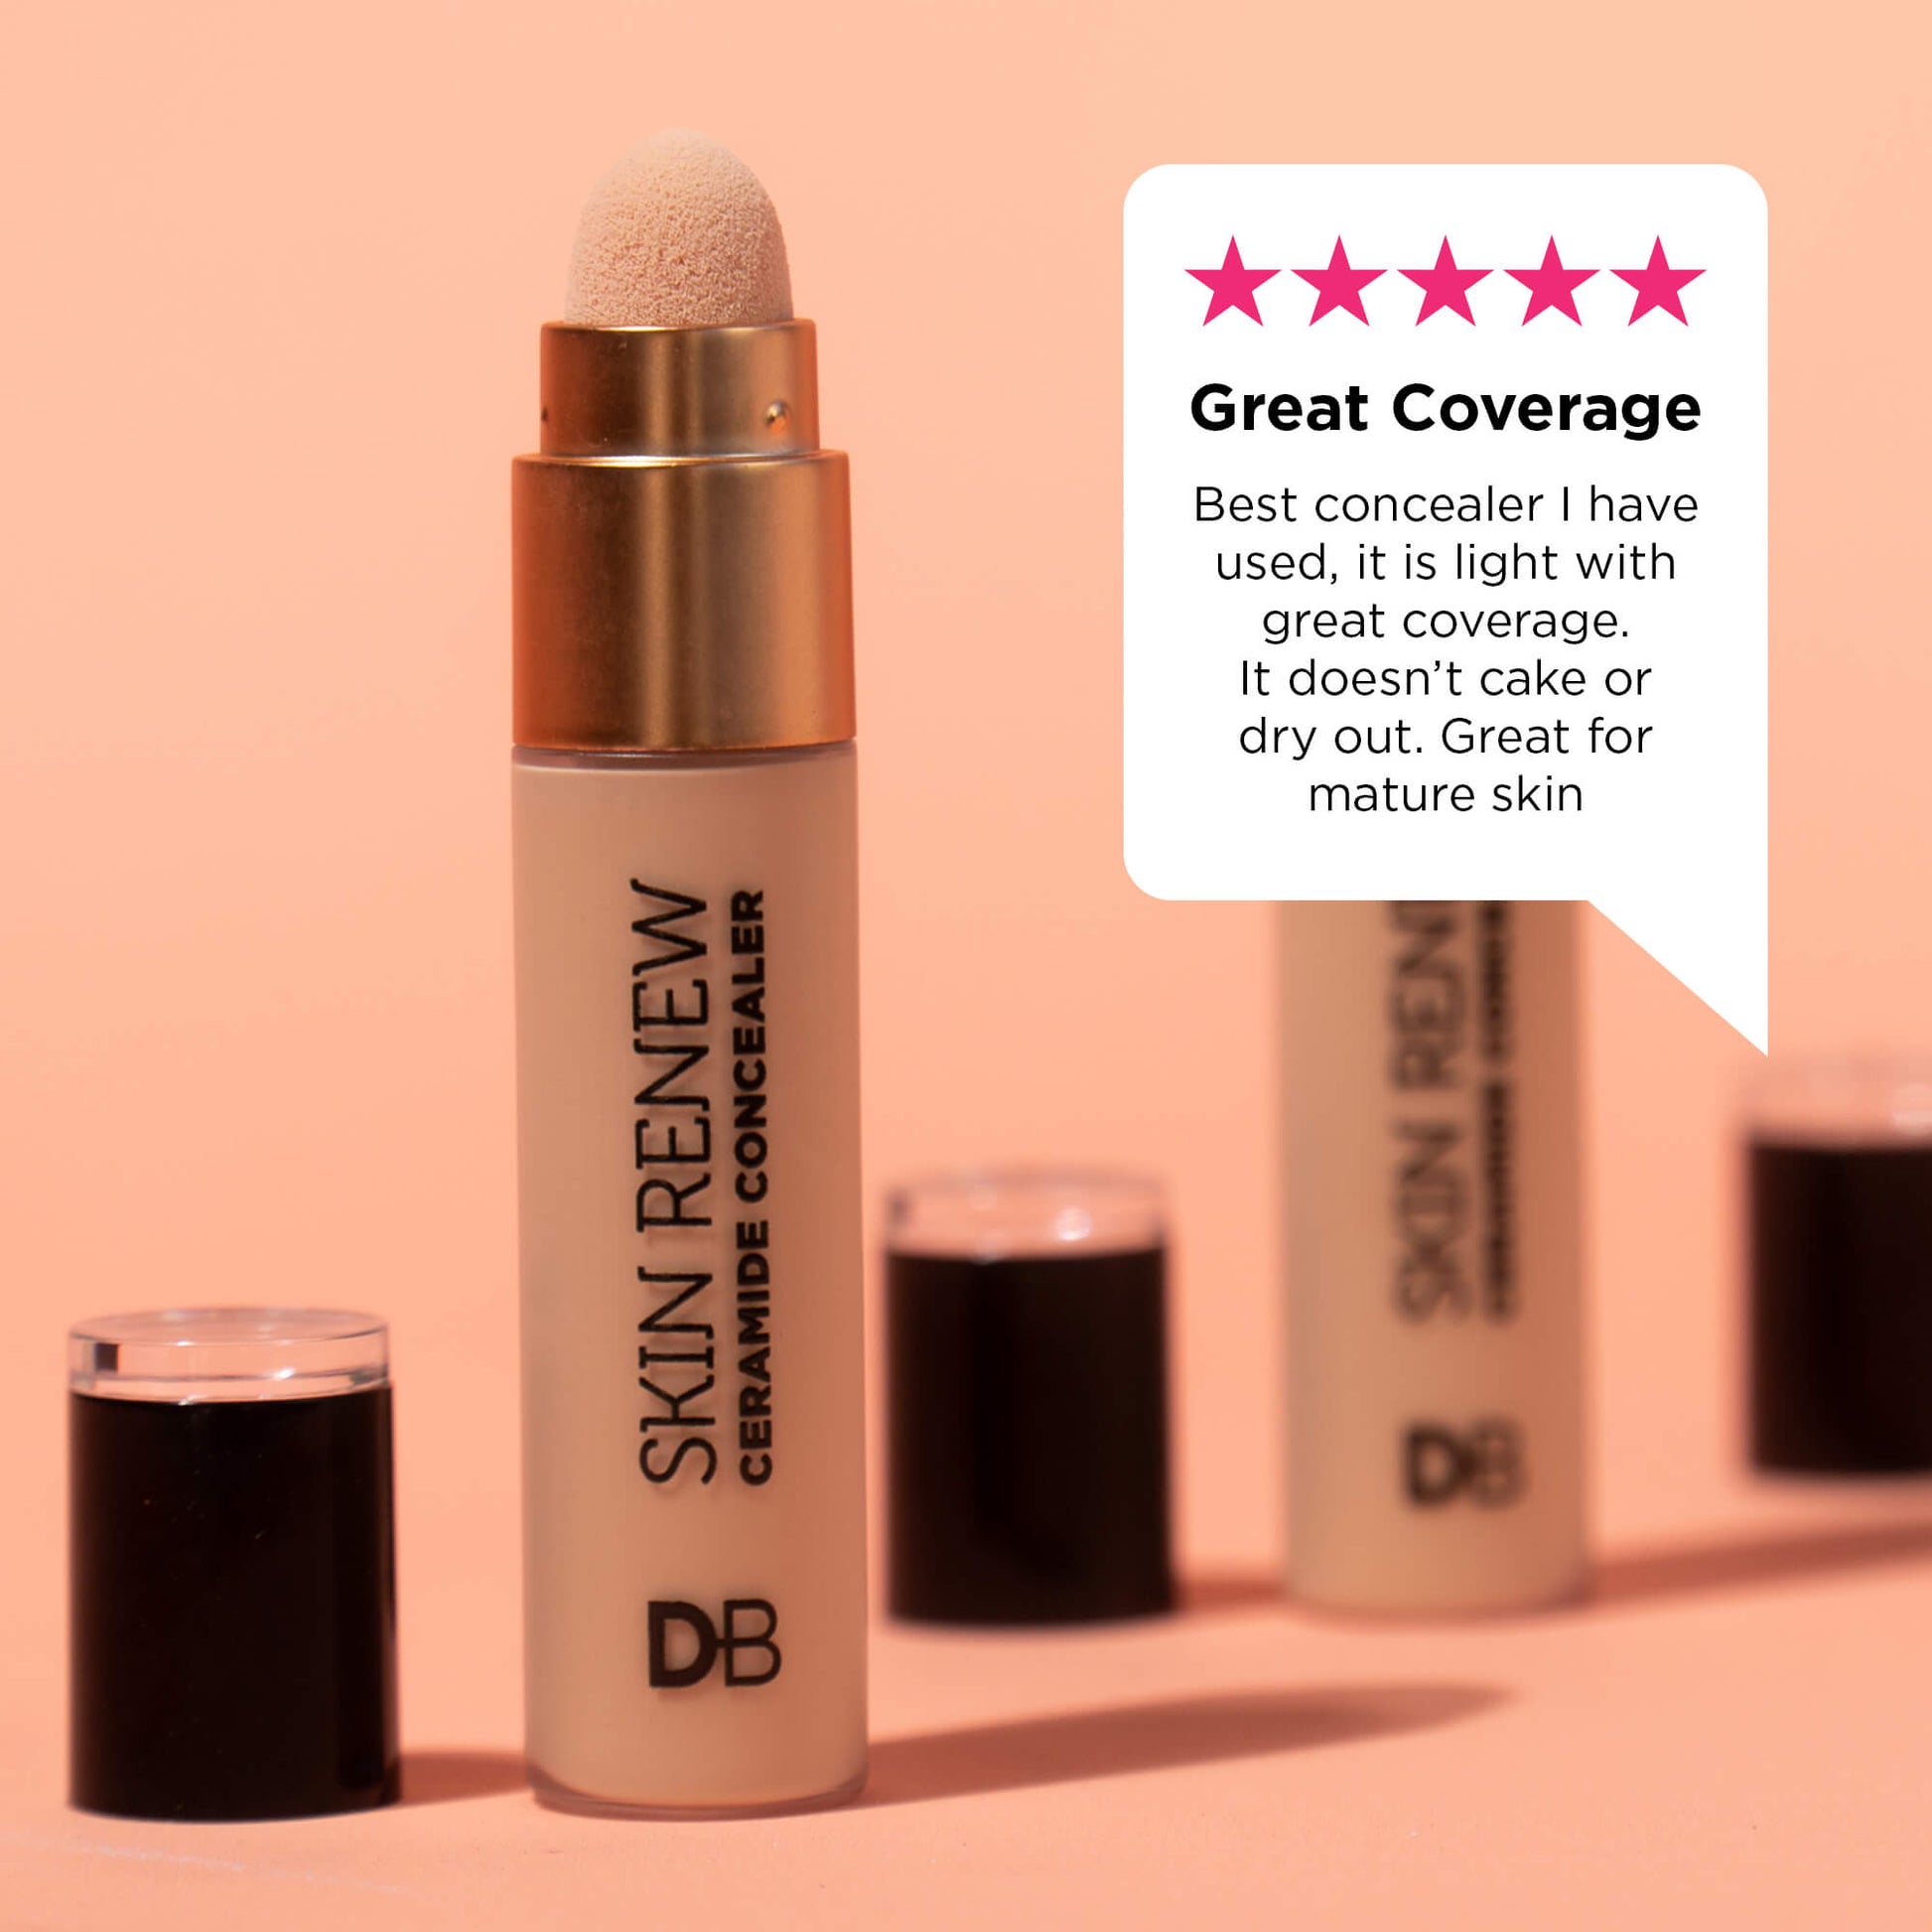 Skin Renew Ceramide Concealer Hero Review | DB Cosmetics